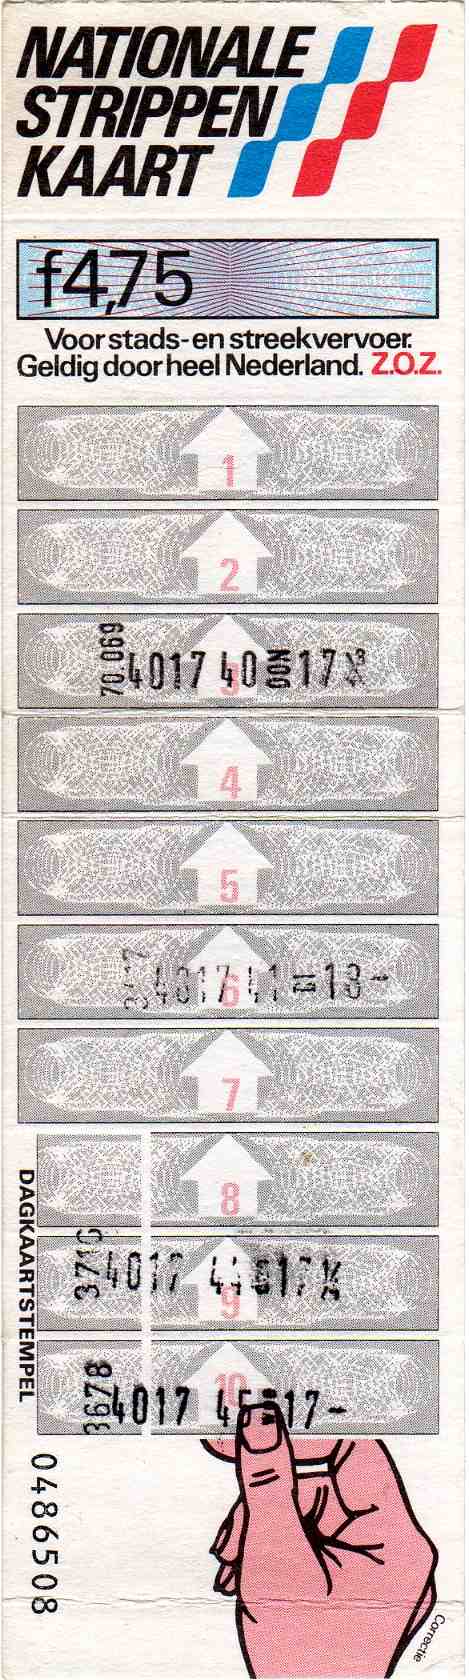 10-strip ticket